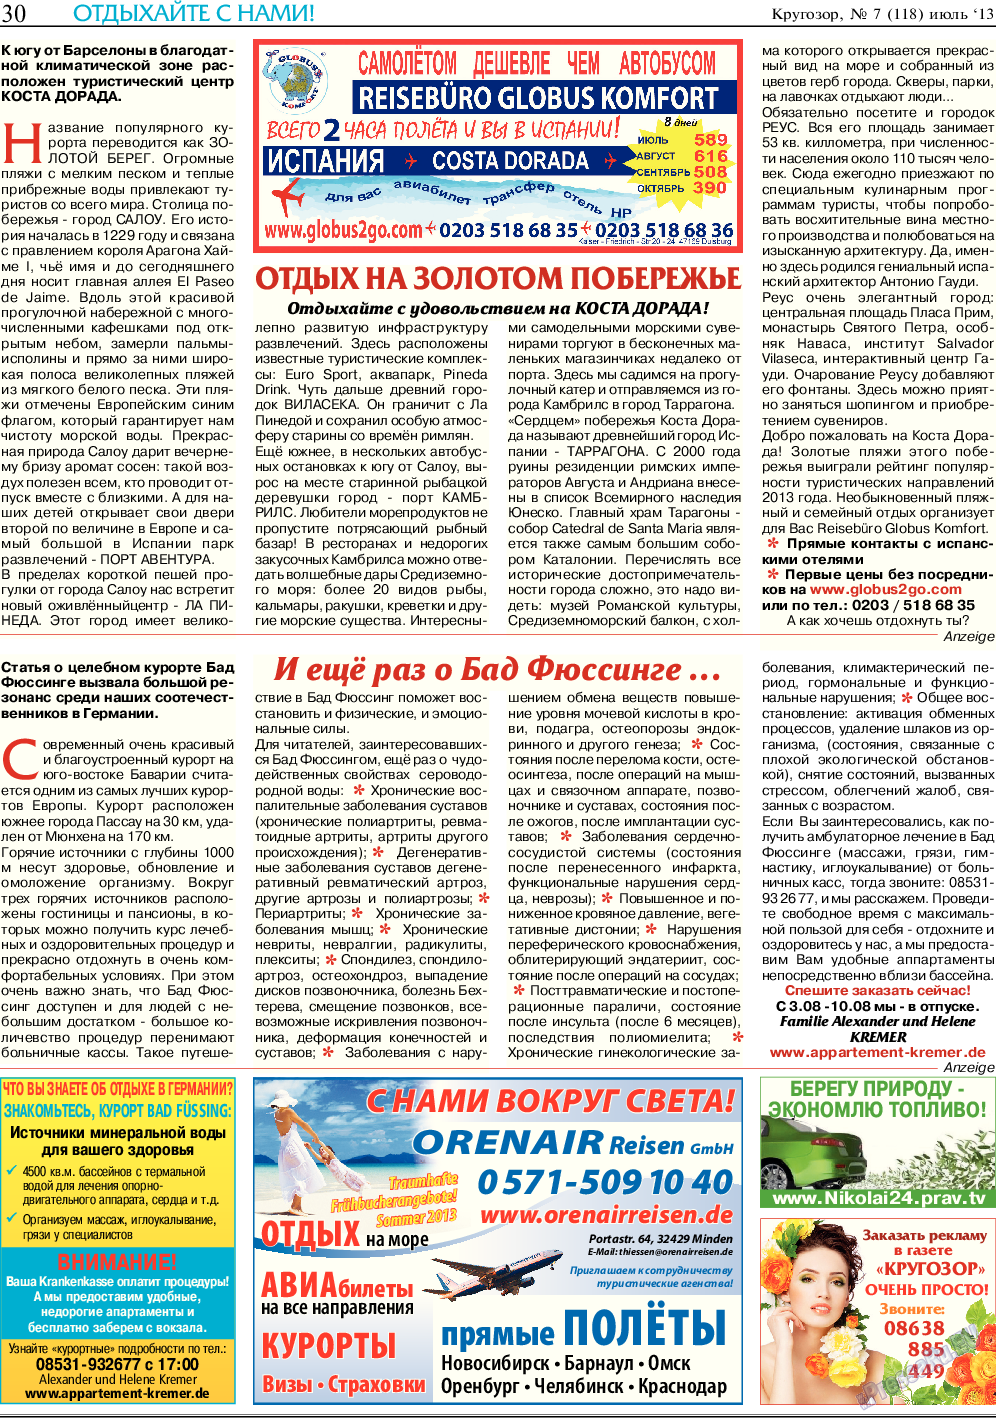 Кругозор (газета). 2013 год, номер 7, стр. 30